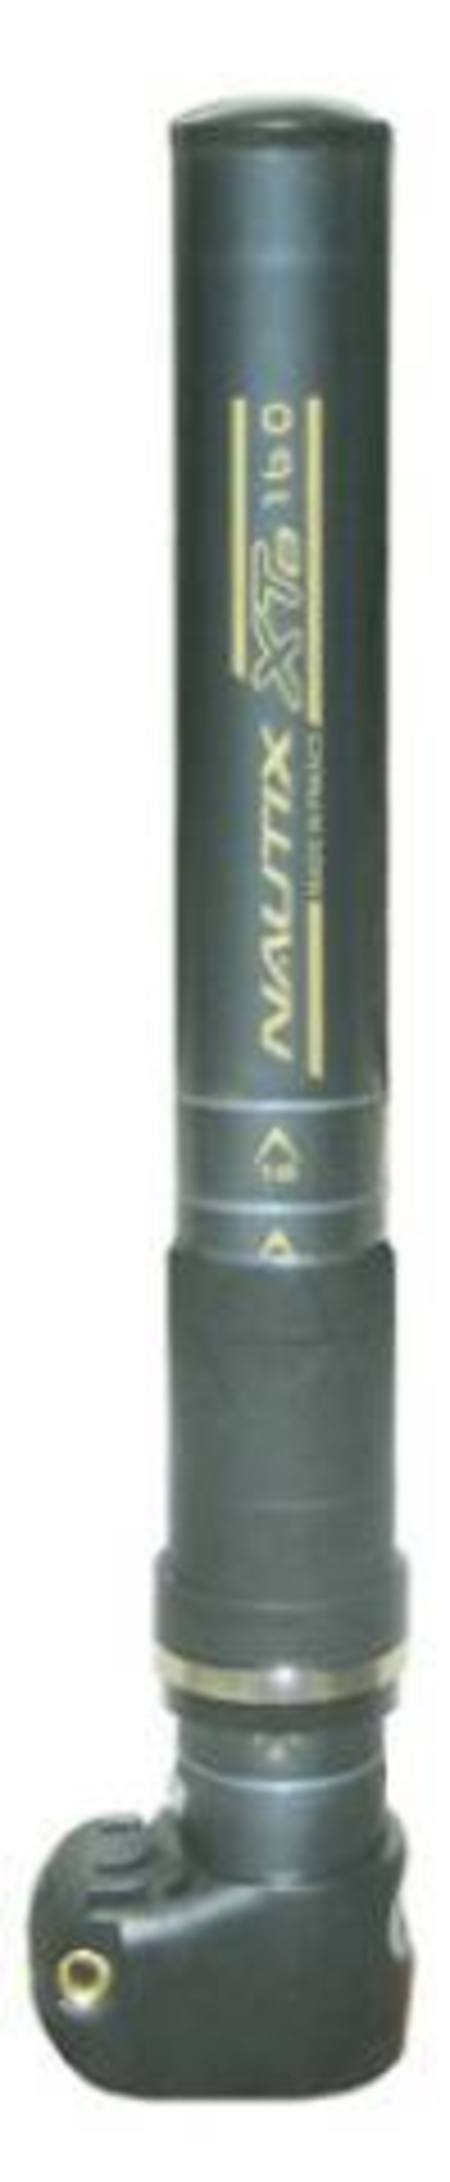 Nautix Mast Ext 160 For Axle